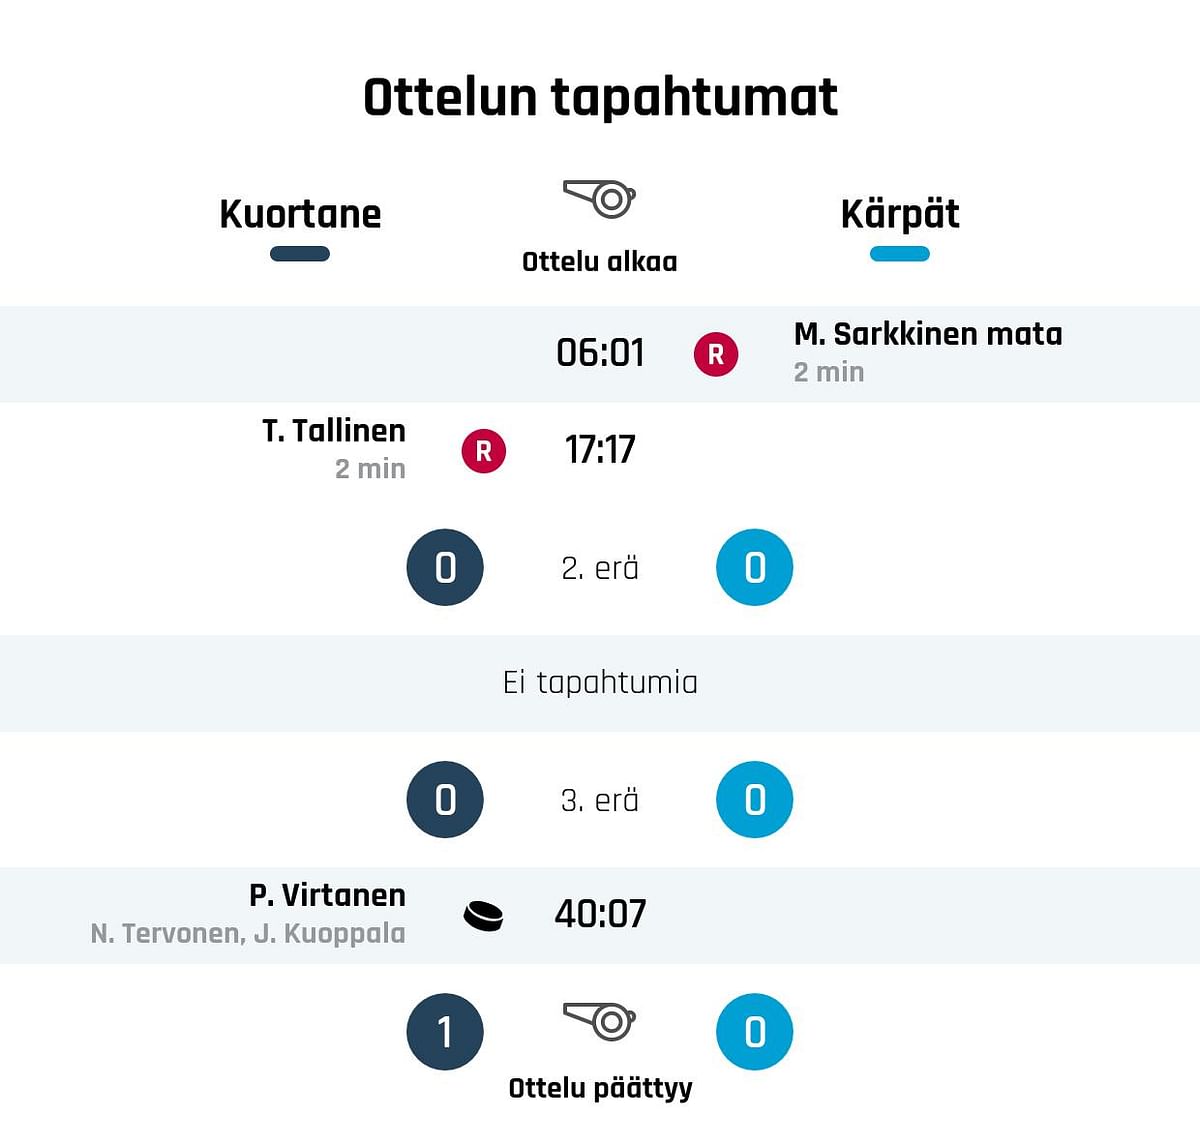 Kuortane 1-0 -voittoon, Kärpät kaatui Virtanen maalilla